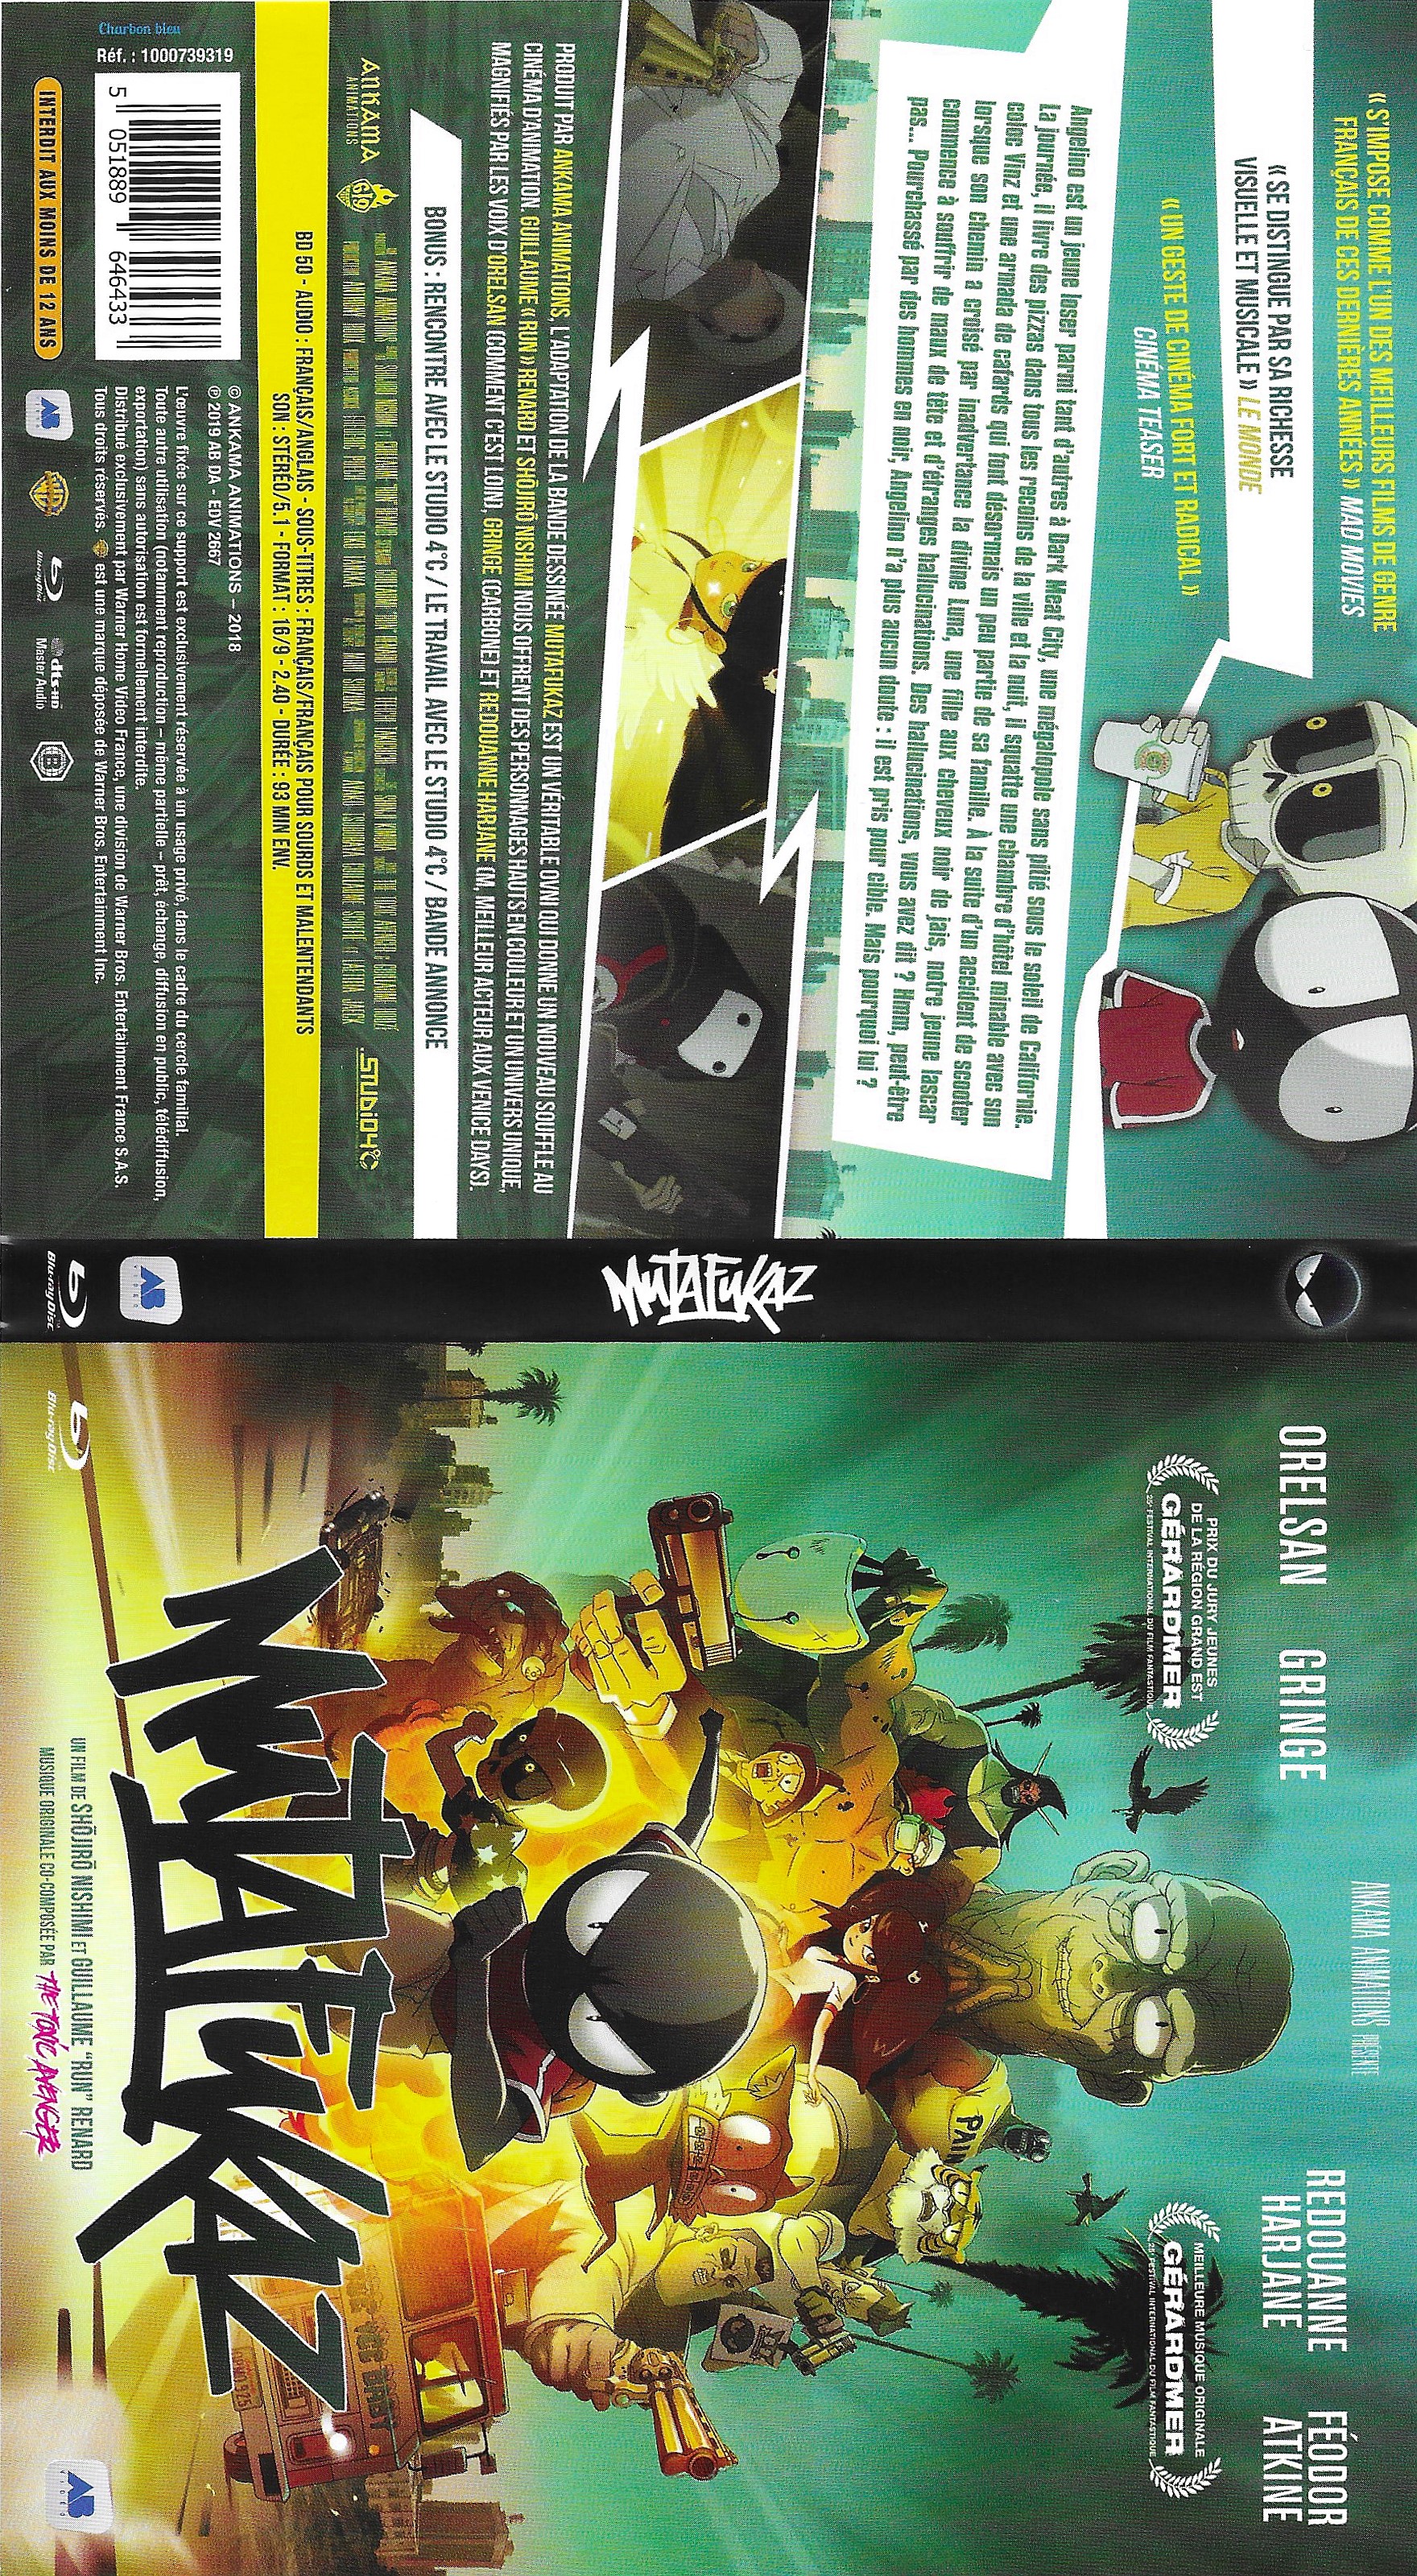 Jaquette DVD Mutafukaz (BLU-RAY)